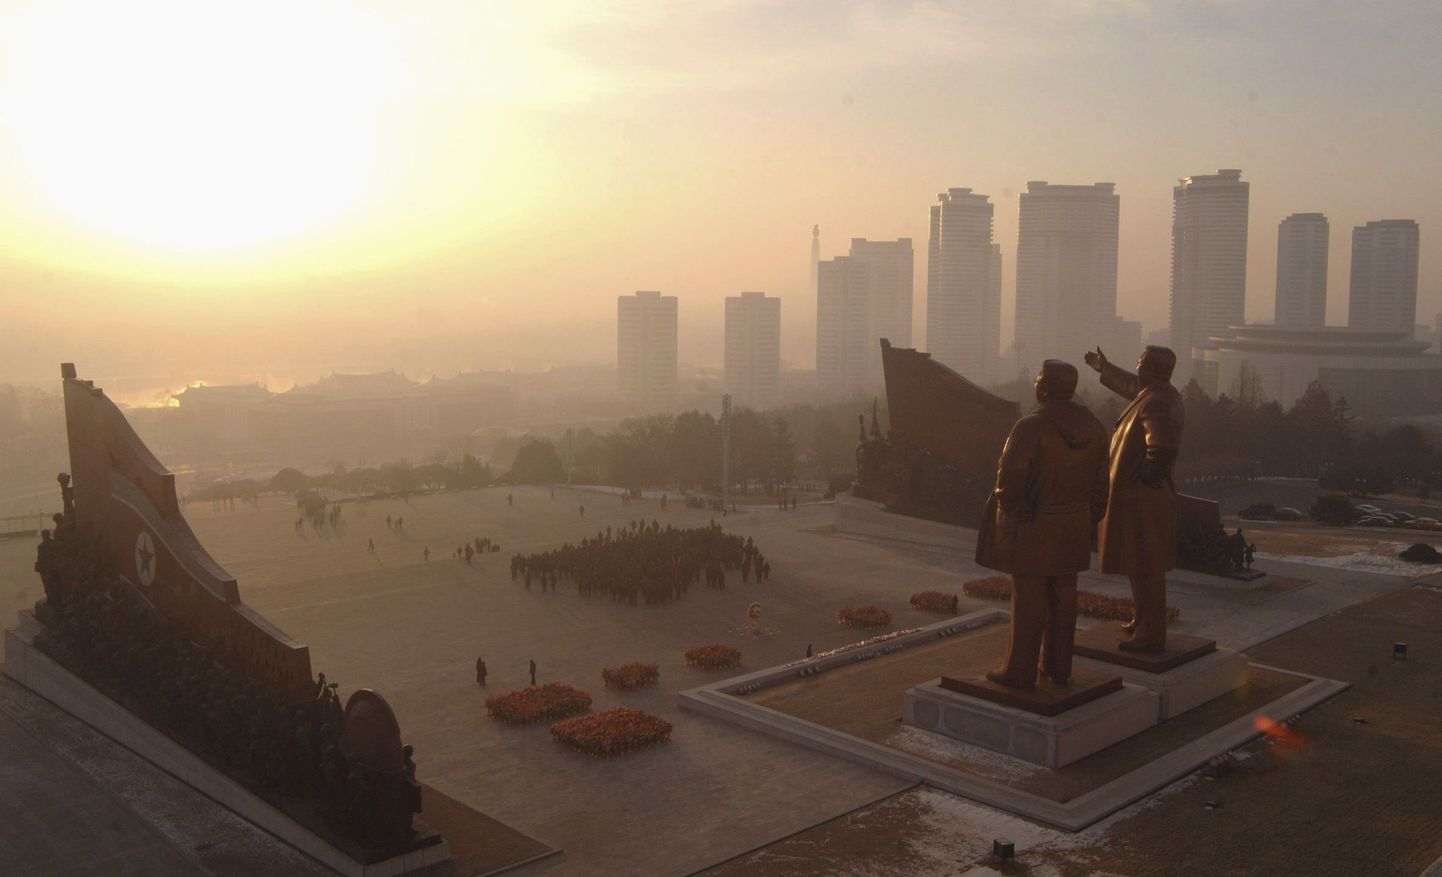 Põhja-Korea riigi rajaja Kim Il Sungi ja endise suure juhi Kim Jong Ili hiigelkujud pealinnas Pyongyangis.